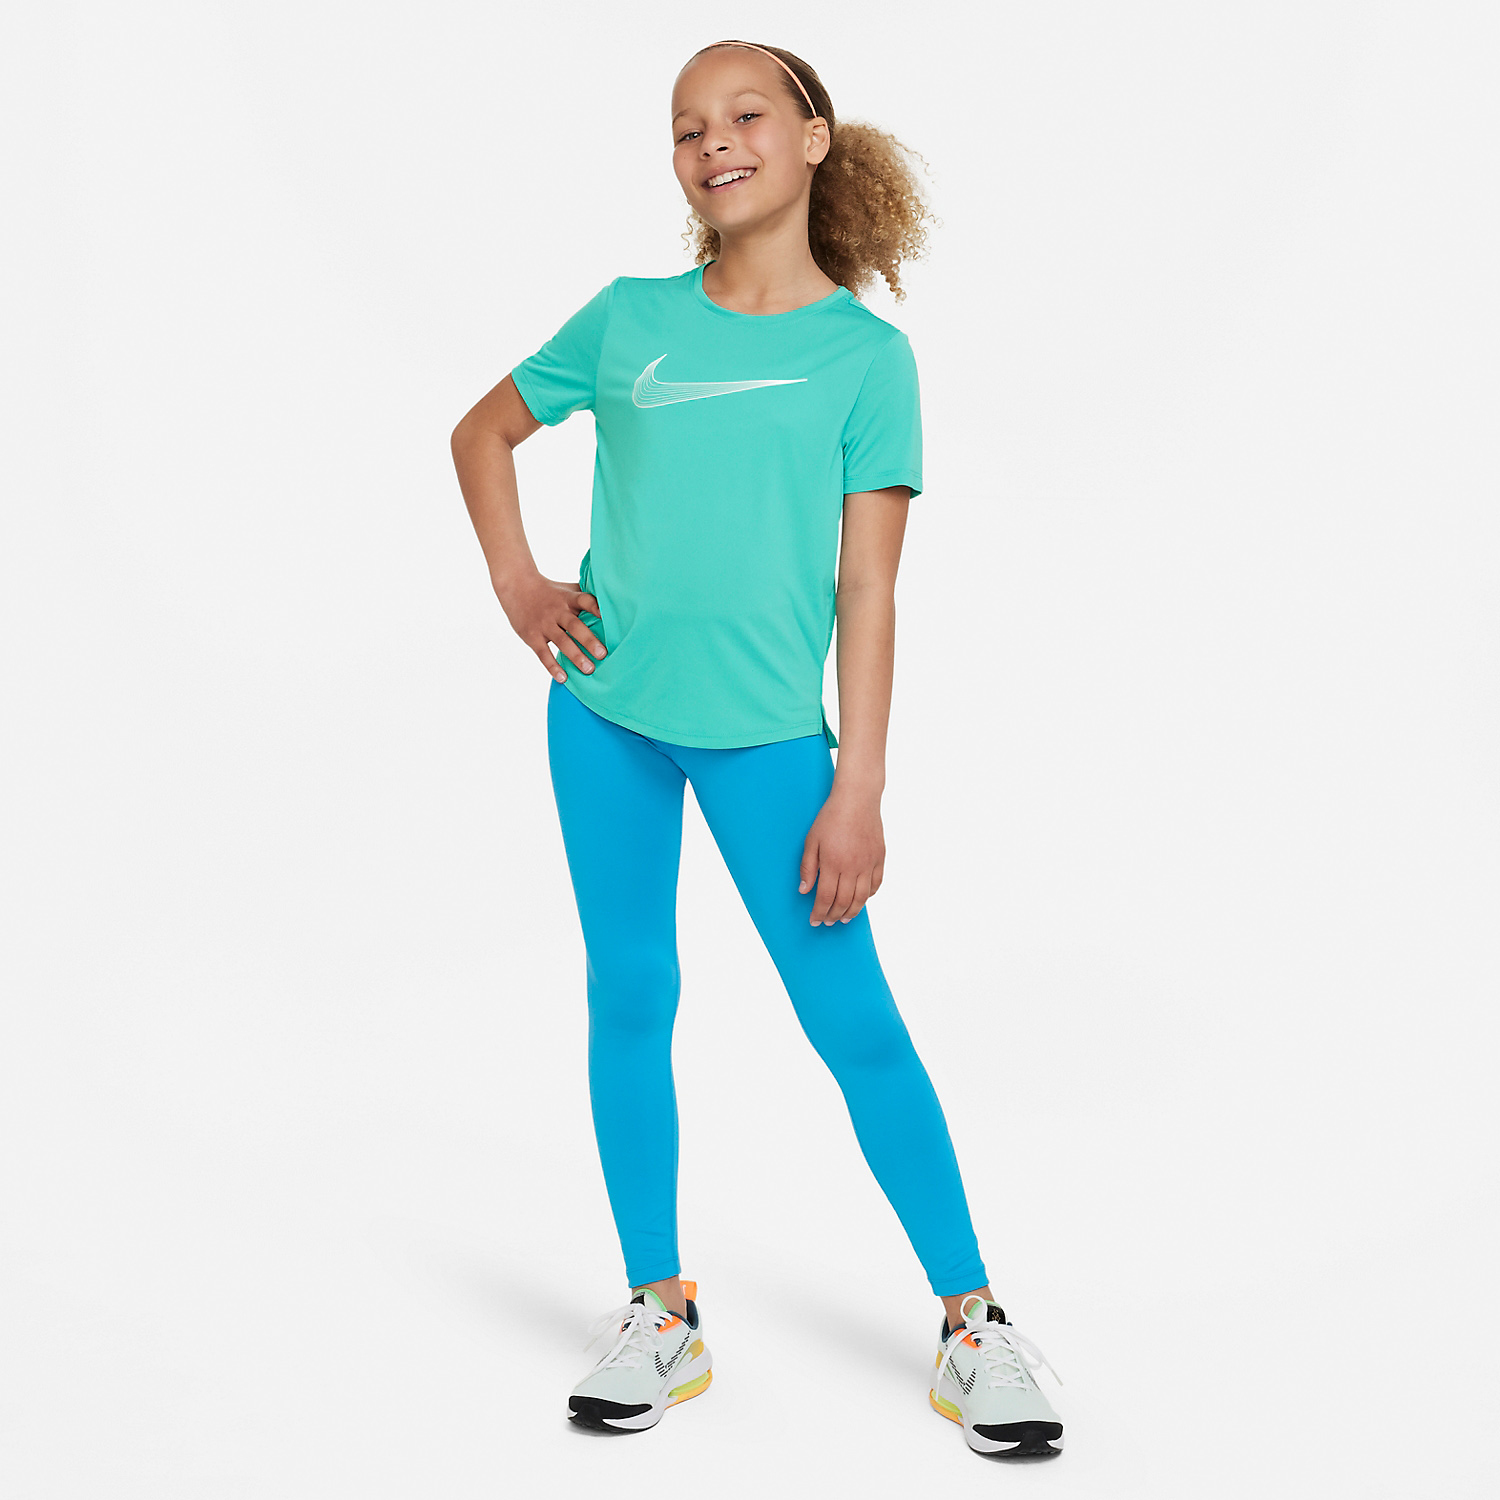 Nike Dri-FIT One T-Shirt Girl - Clear Jade II/White